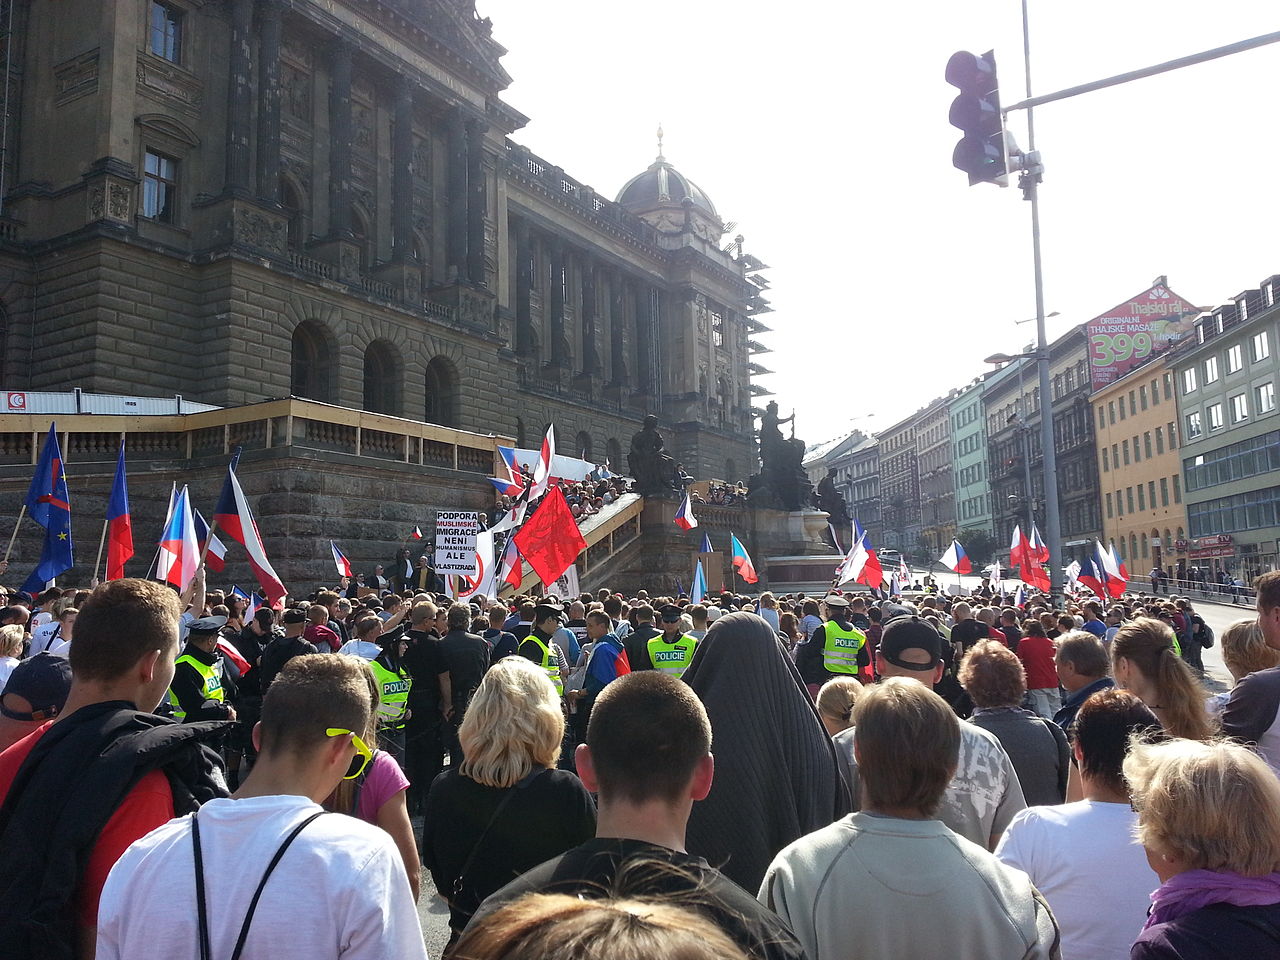 Митинг в Праге. Митинг в Праге 89. Чехия АНТИРОССИЯ. Иммиграция за против.